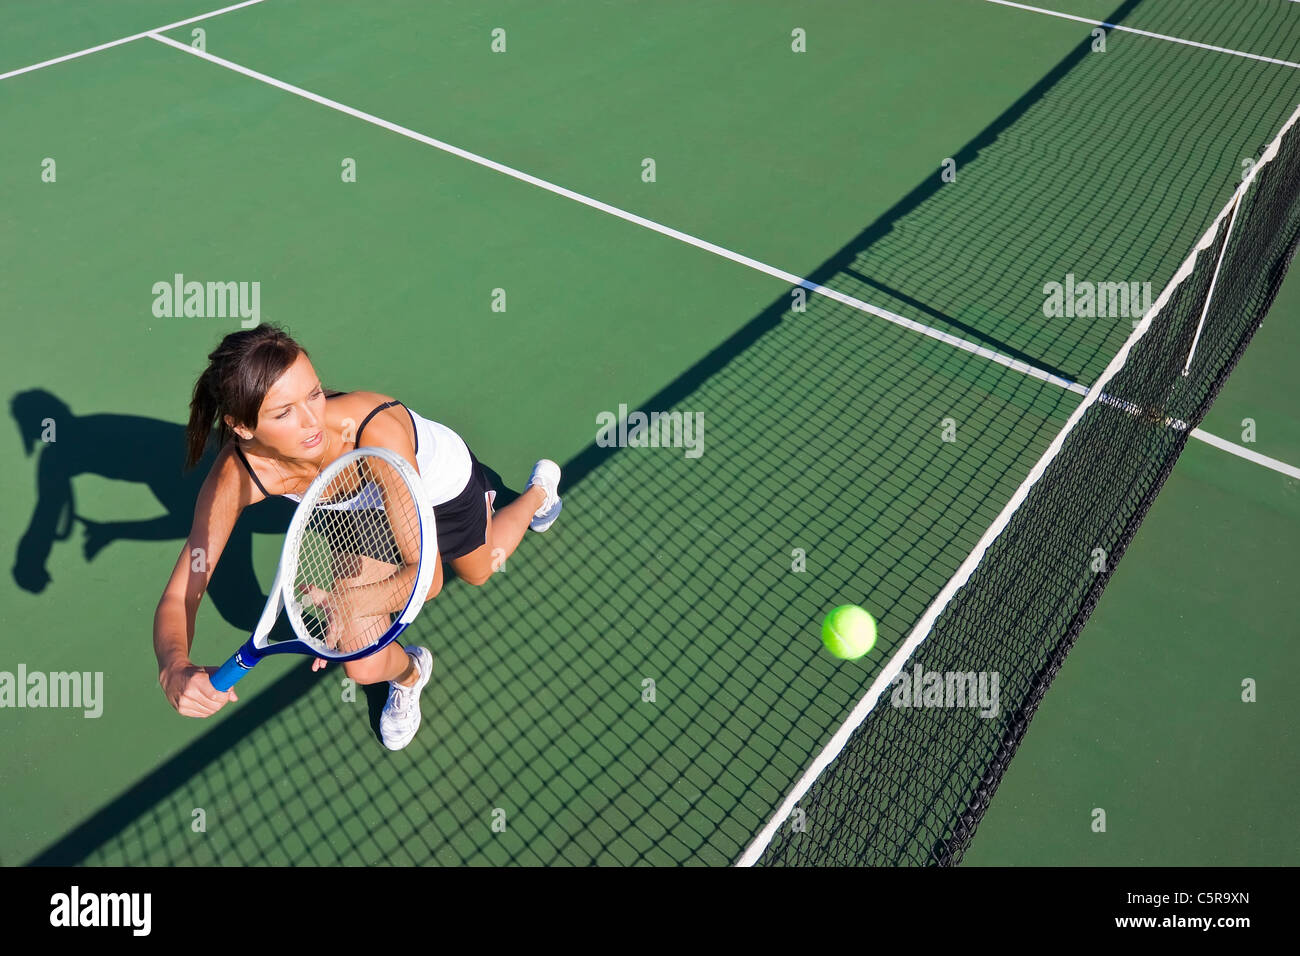 Tennisspieler erstreckt sich um den Ball zurück. Stockfoto